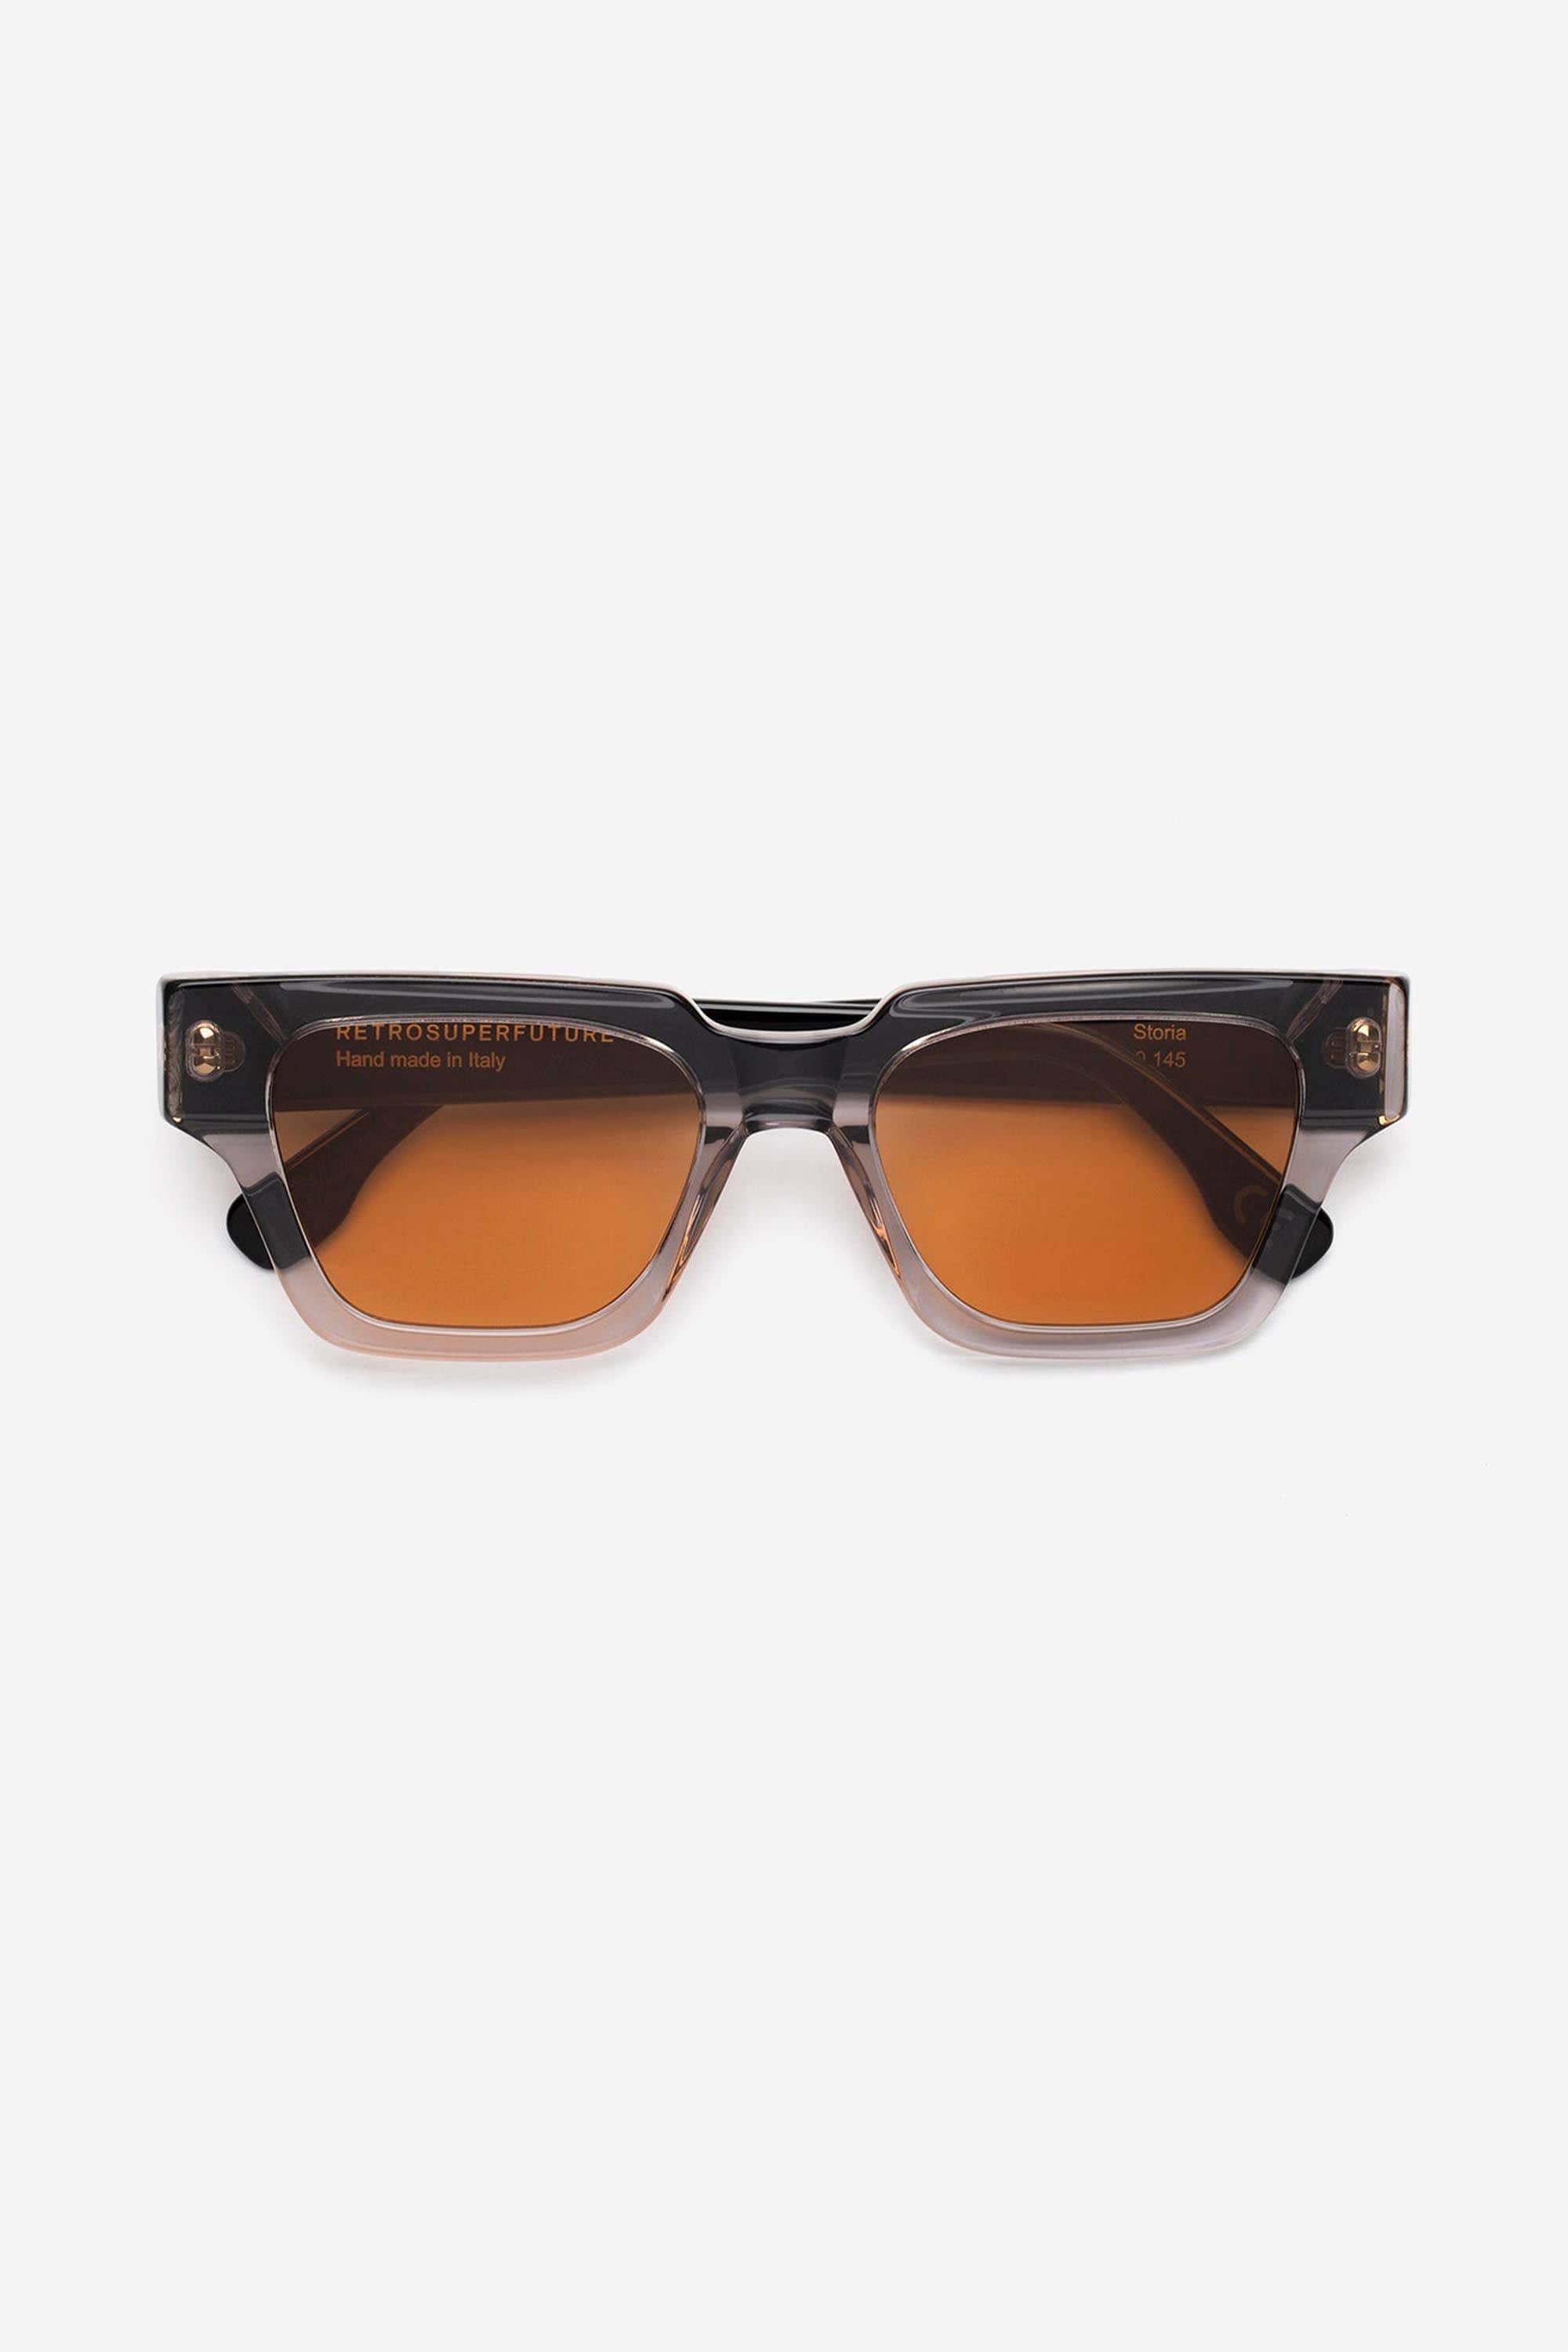 Retrosuperfuture pooch storia crystal grey sunglasses - Eyewear Club